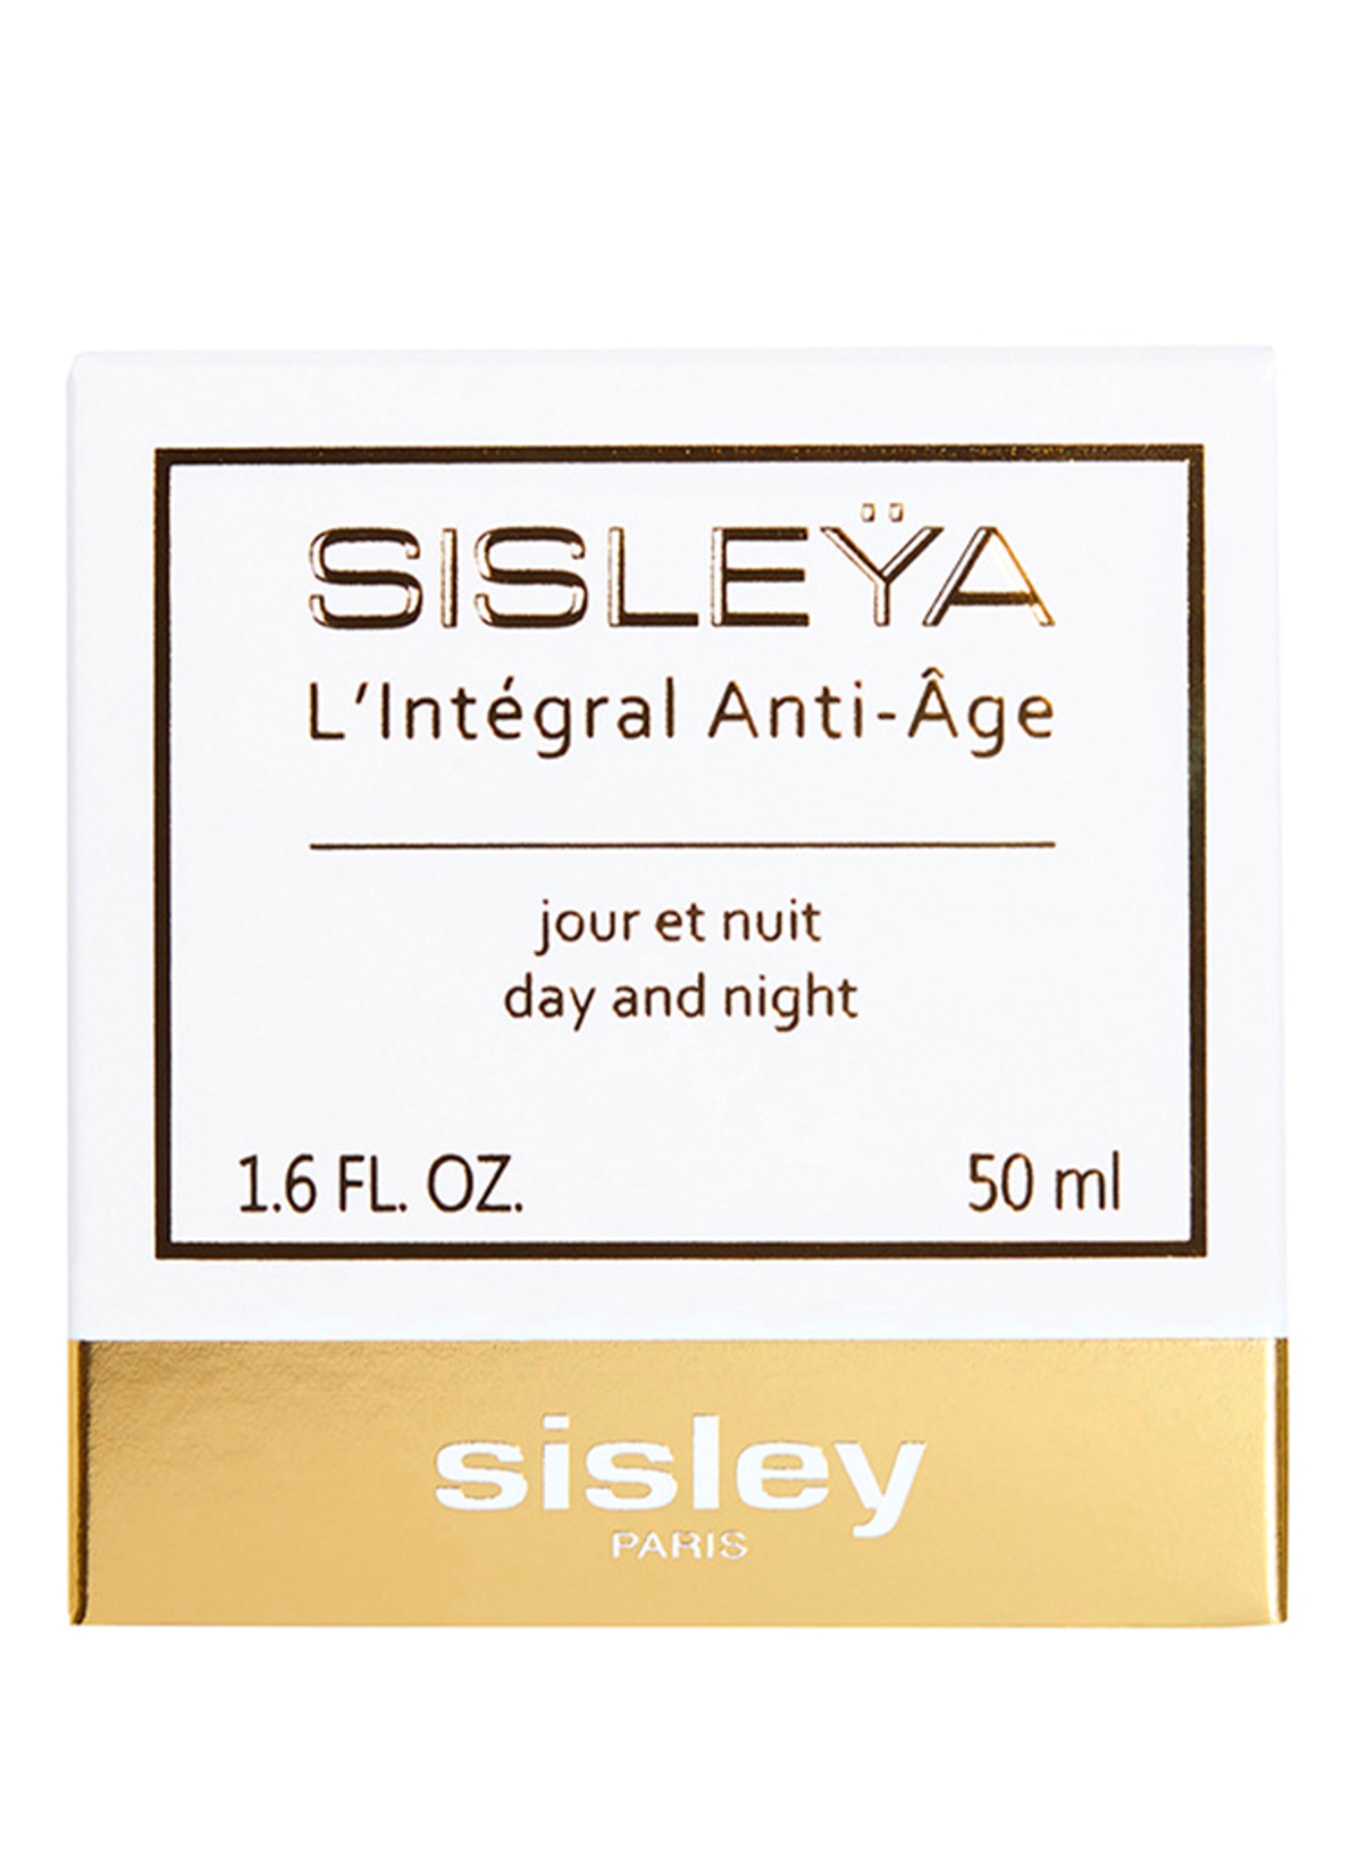 sisley Paris SISLEŸA L'INTÉGRAL ANTI-AGE (Obrazek 2)